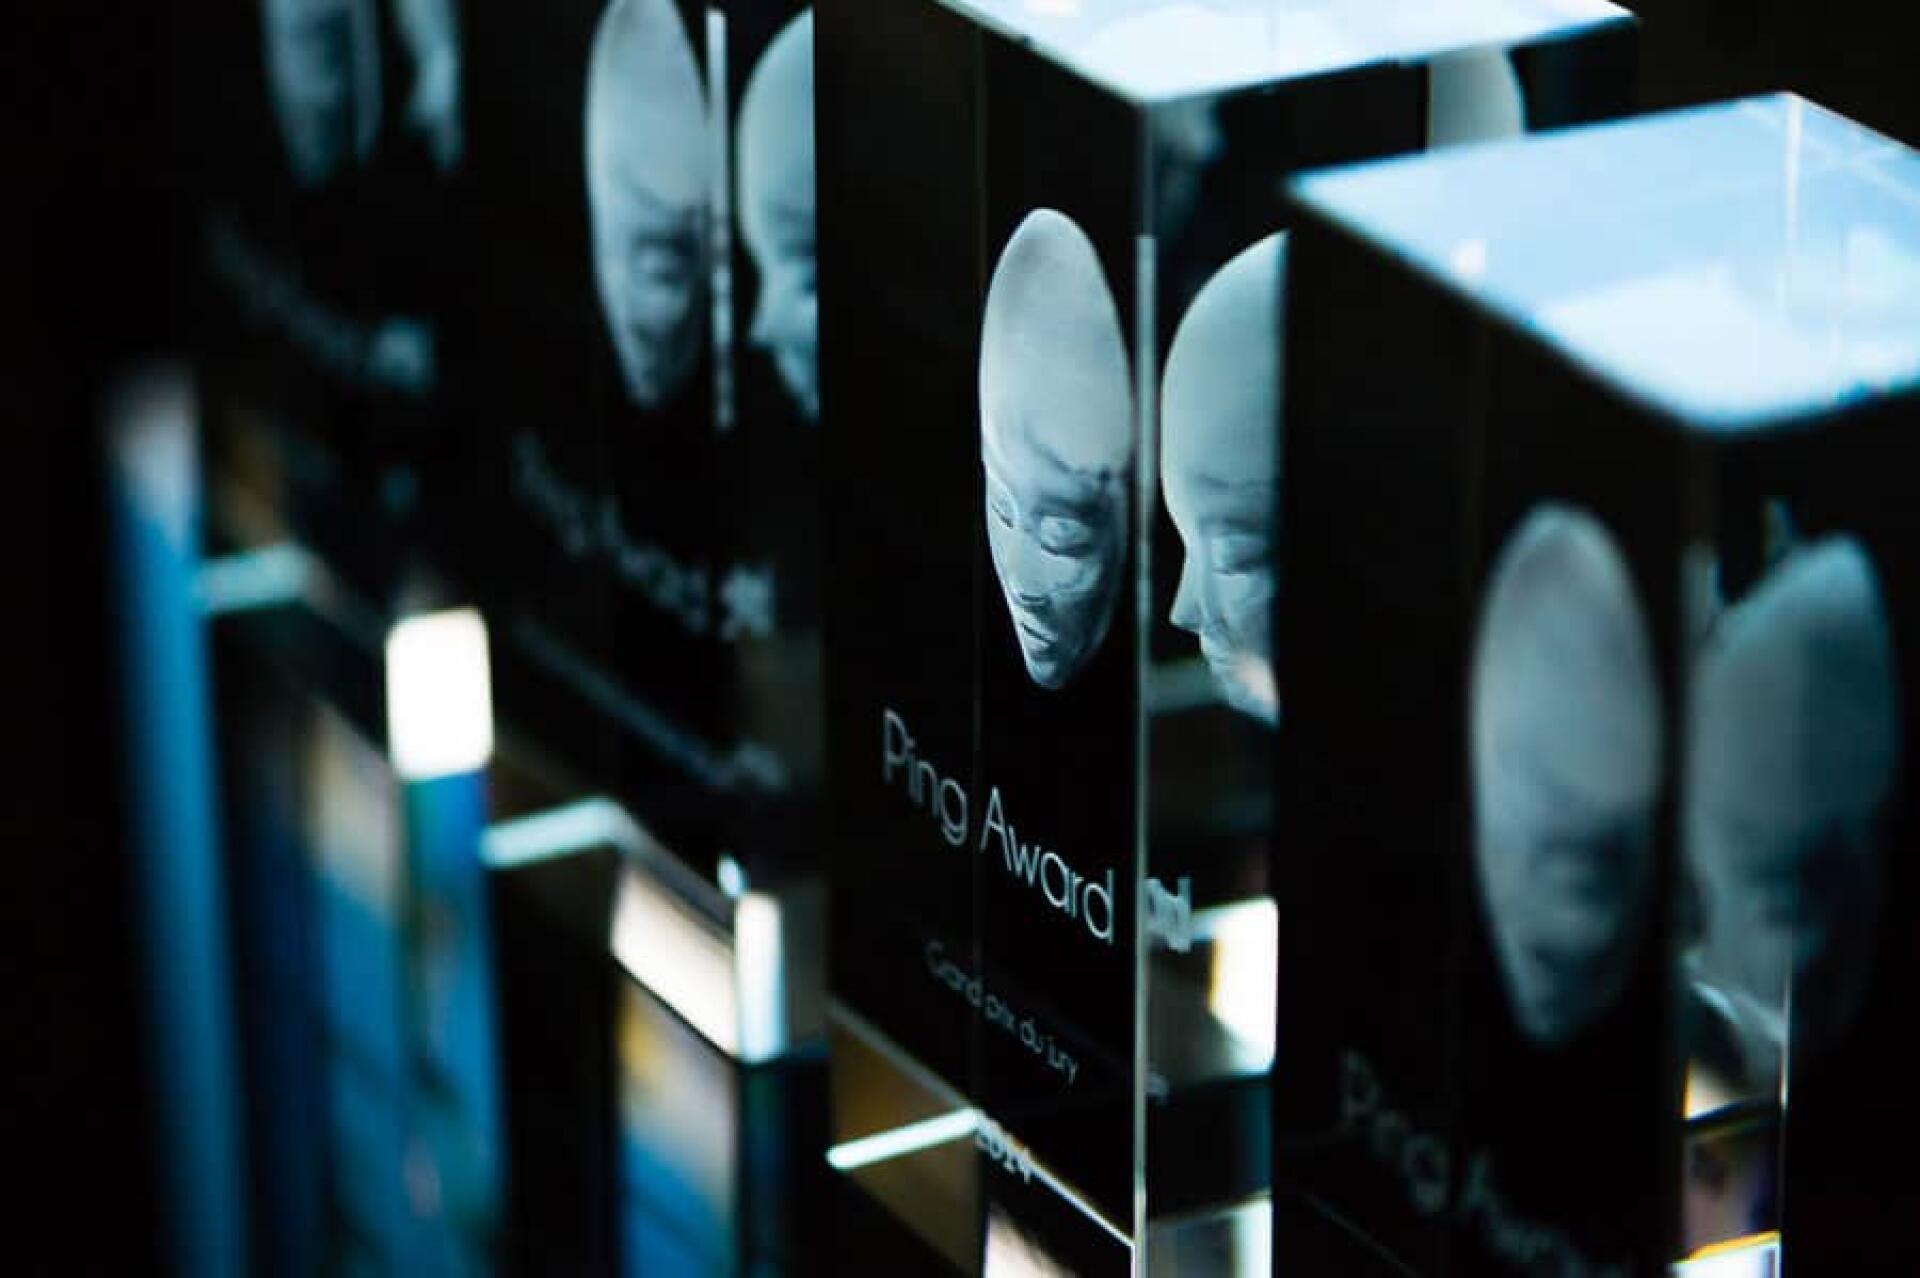 Depuis 2013, les Ping Awards récompensent la création française. Ils seront désormais en concurrence avec les Pégases.